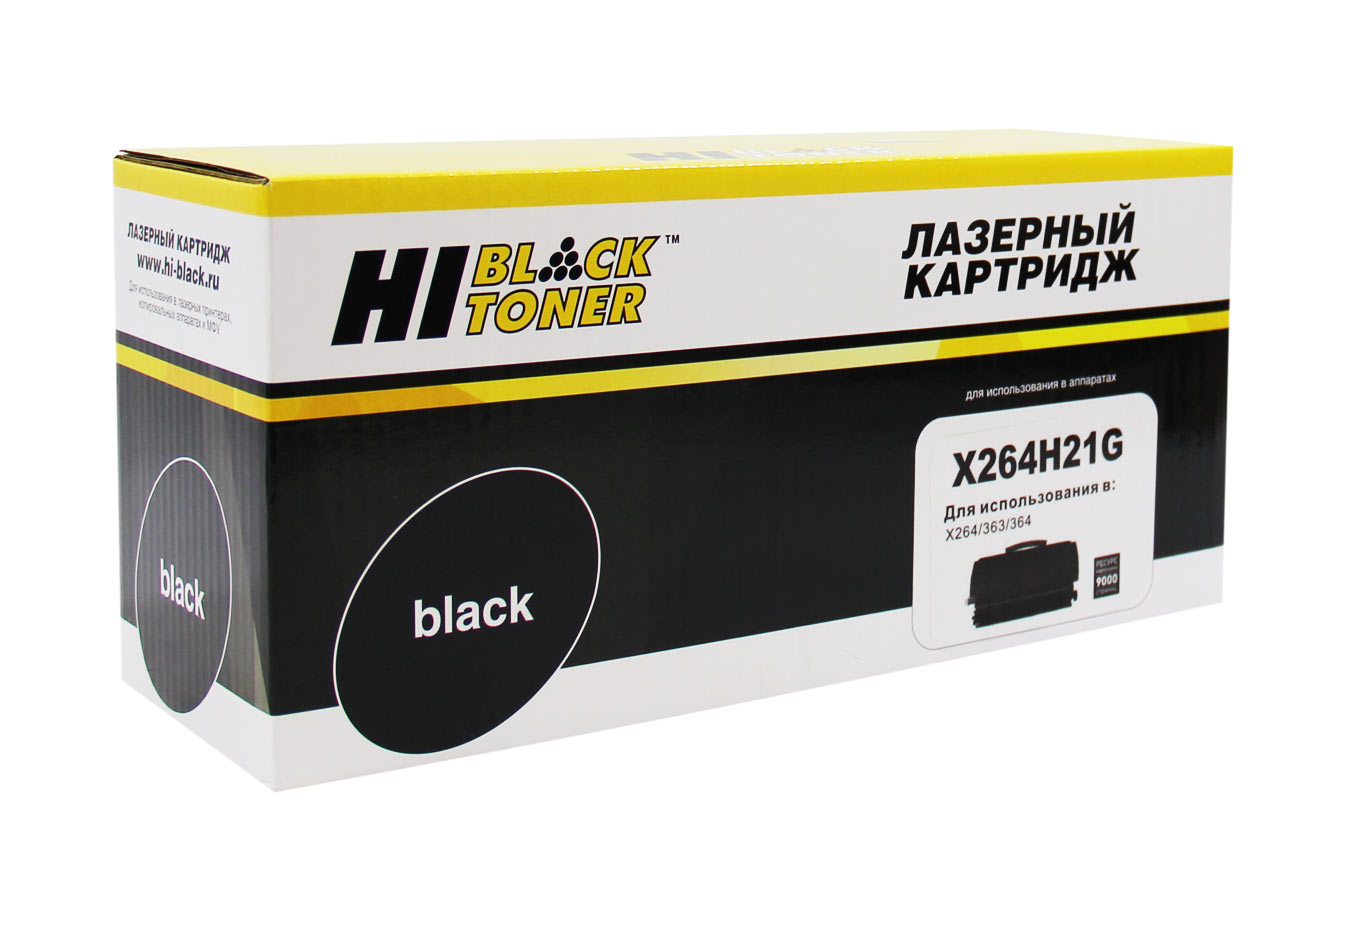 Купить совместимый картридж X264H21G по низкой цене с доставкой по Ростову-на-Дону для лазерных принтеров Lexmark